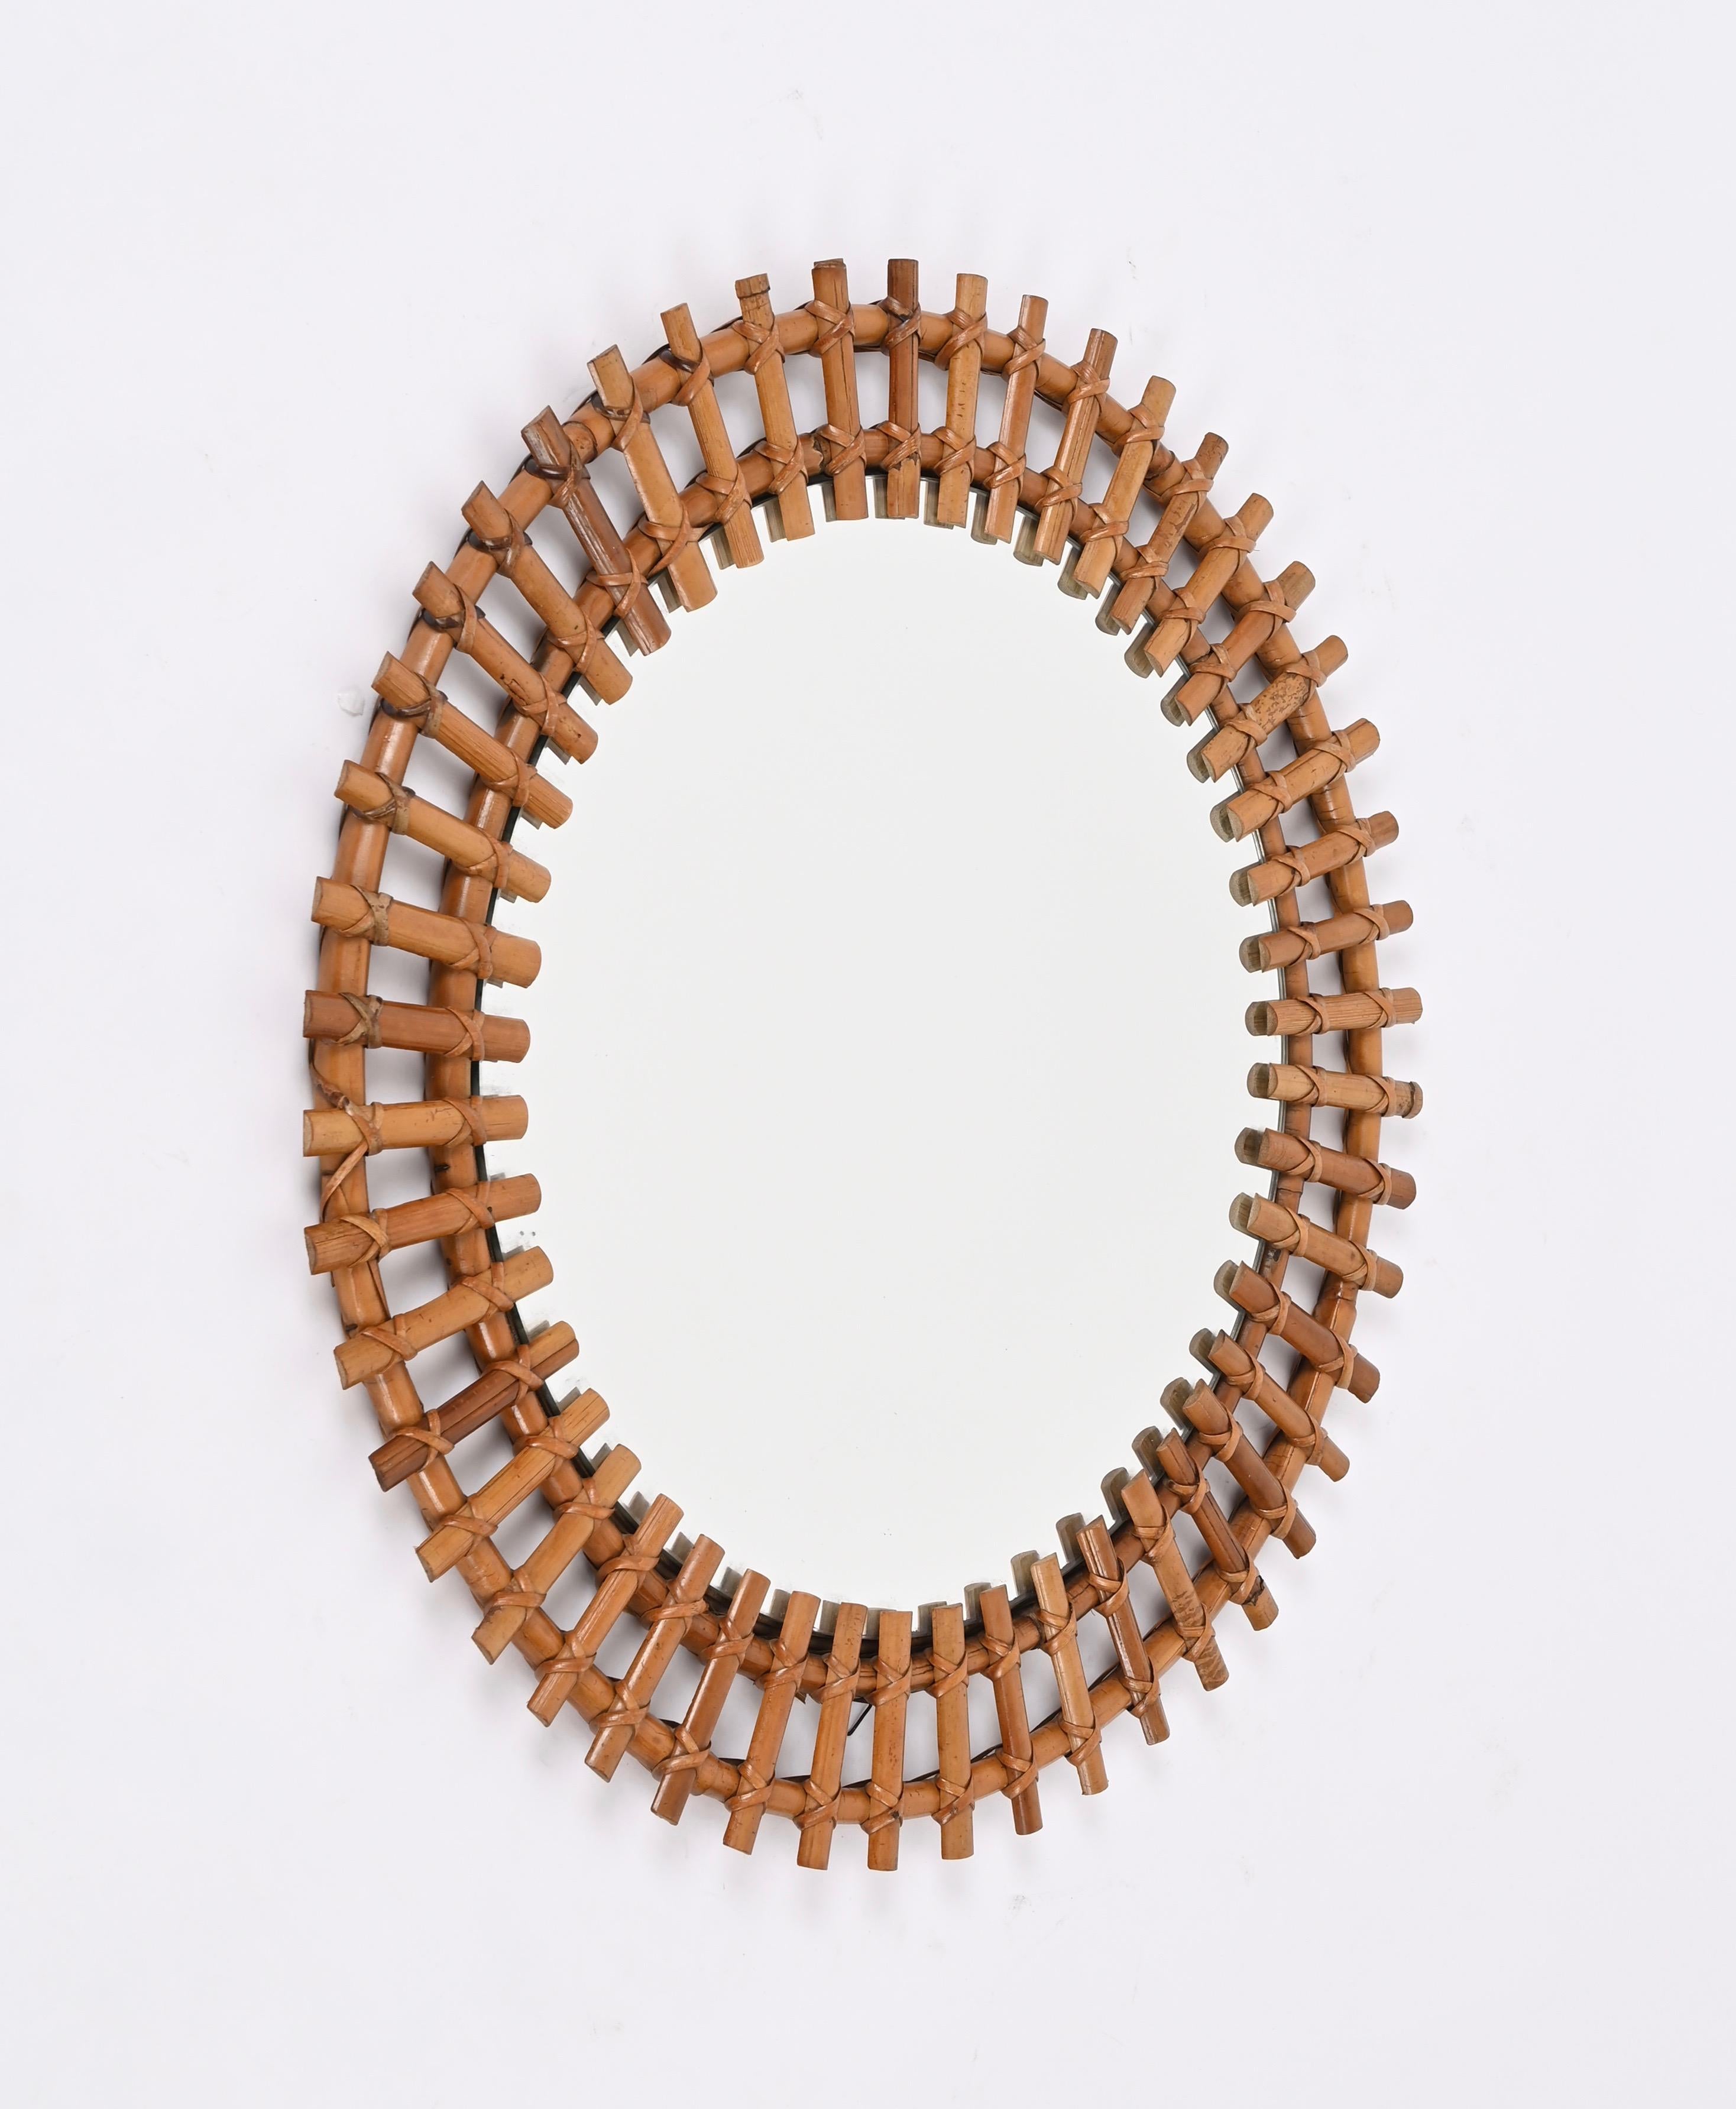 Spectaculaire miroir rond de style Riviera française du milieu du siècle en rotin, osier et bambou. Cette magnifique pièce a été conçue par Franco Albini et produite en Italie dans les années 1970.

Ce superbe miroir, entièrement fabriqué à la main